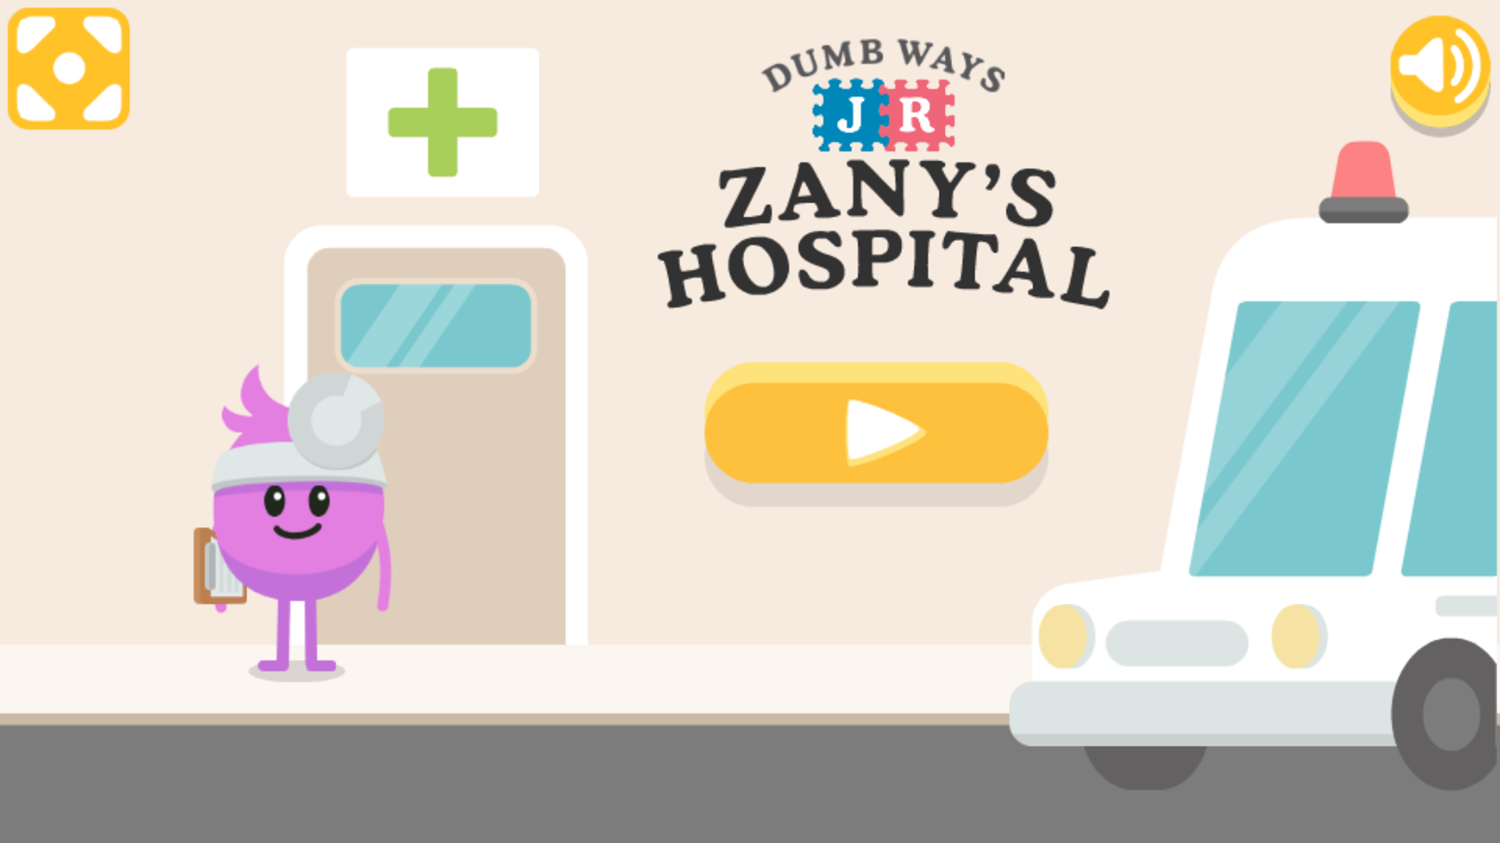 Dumb Ways Jr Zany's Hospital Game Welcome Screen Screenshot.